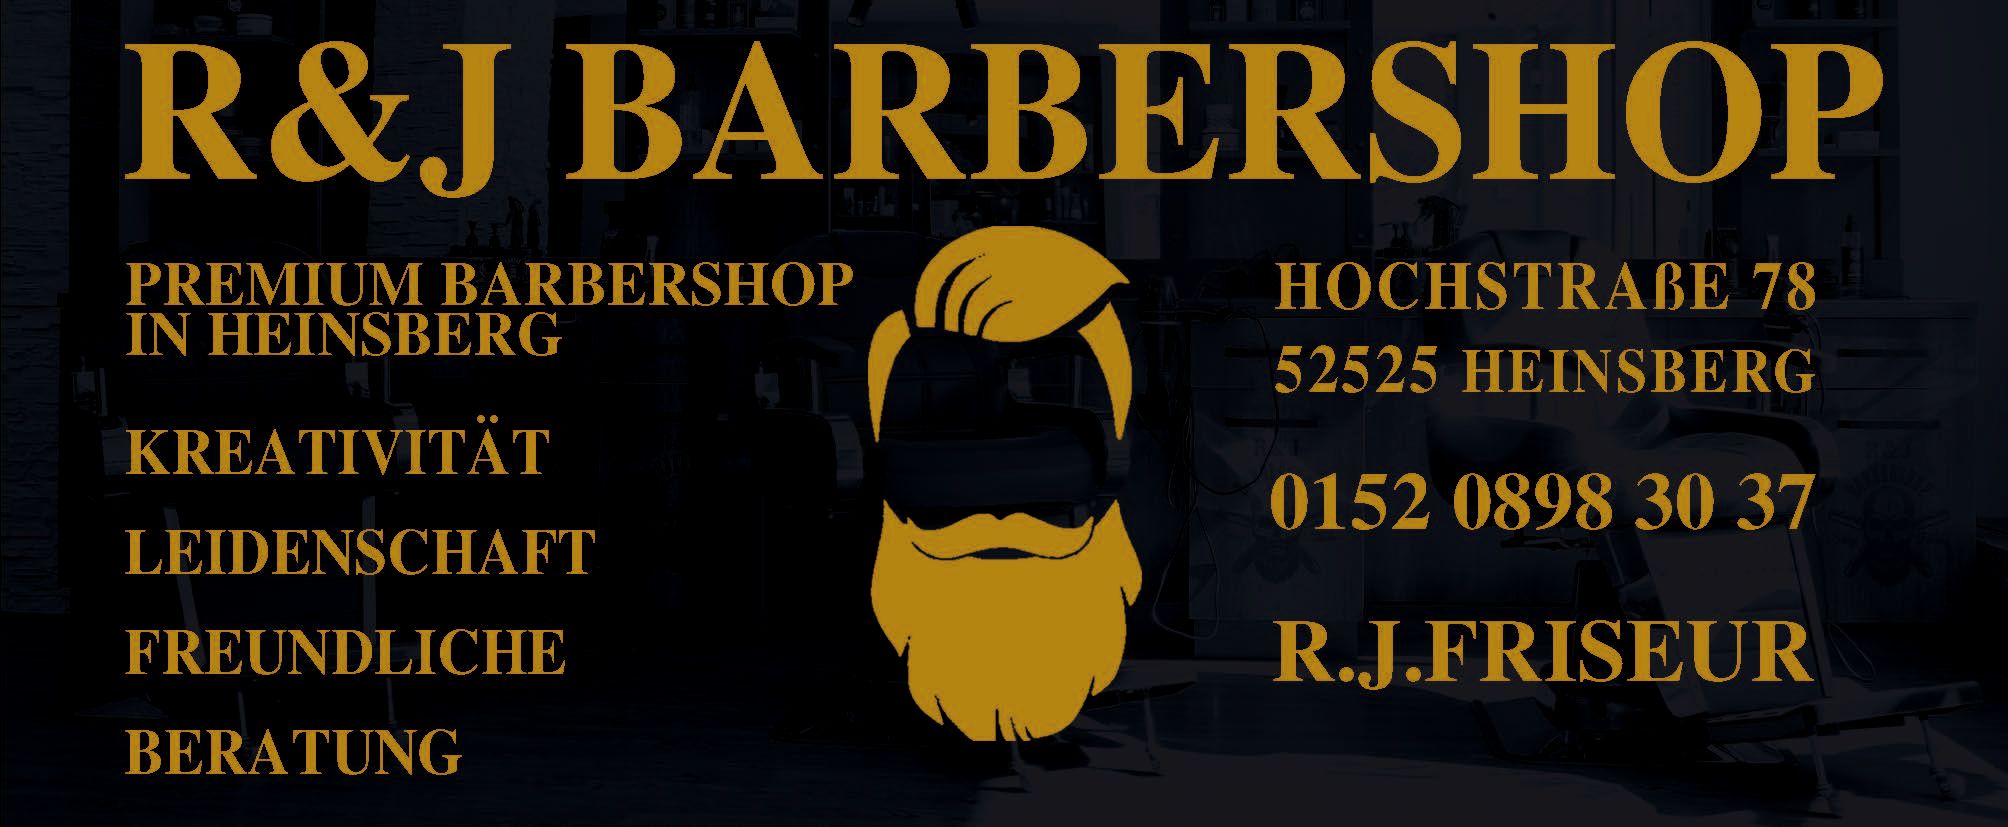 R&J Barbershop